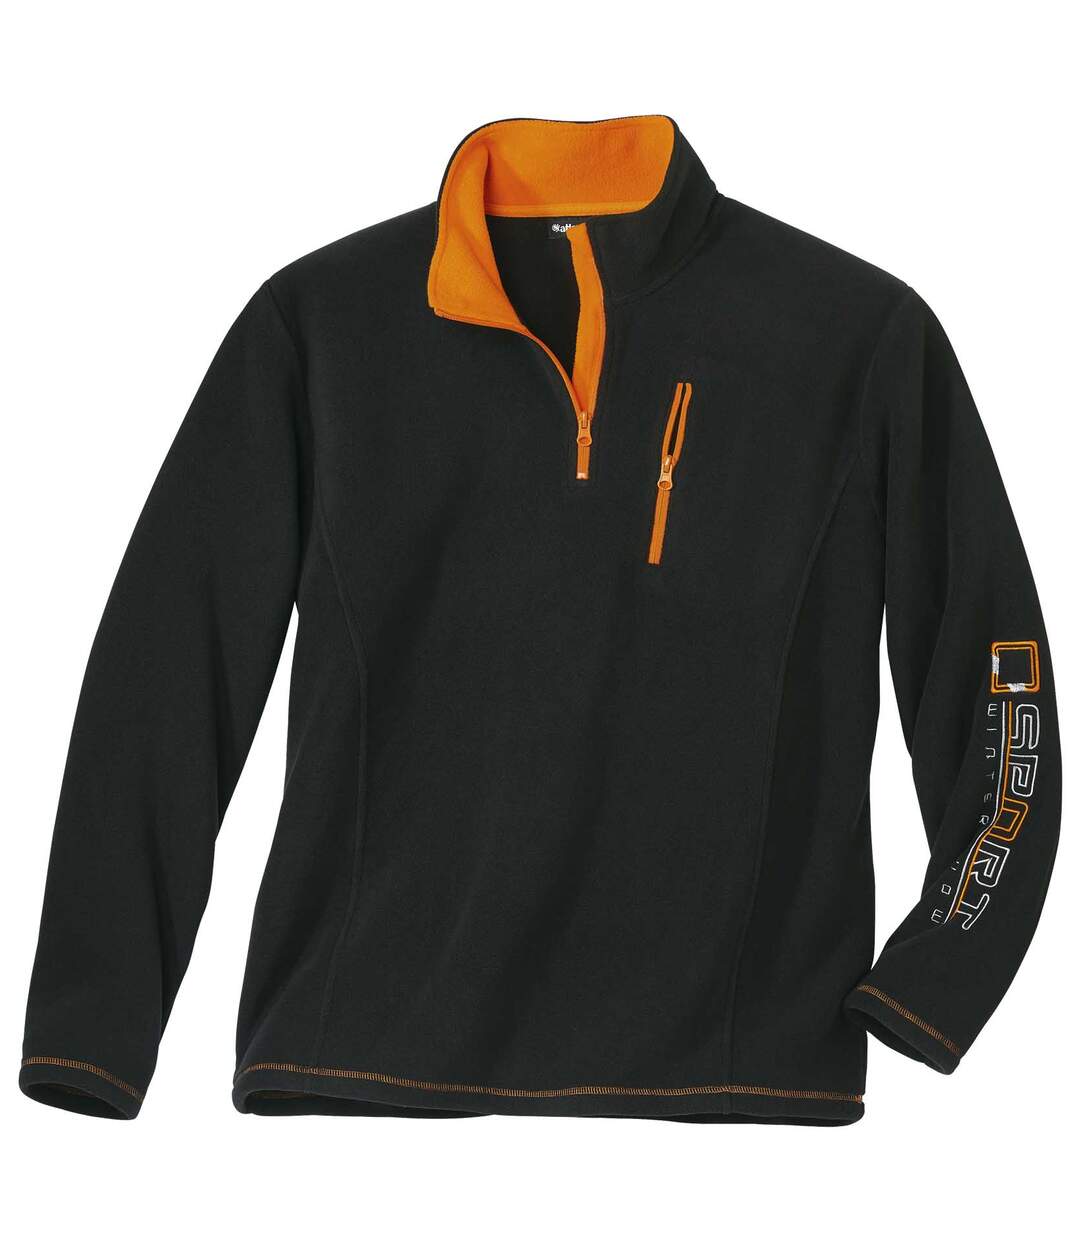 Men's Black Sporty Fleece Sweater - Half-Zip Atlas For Men